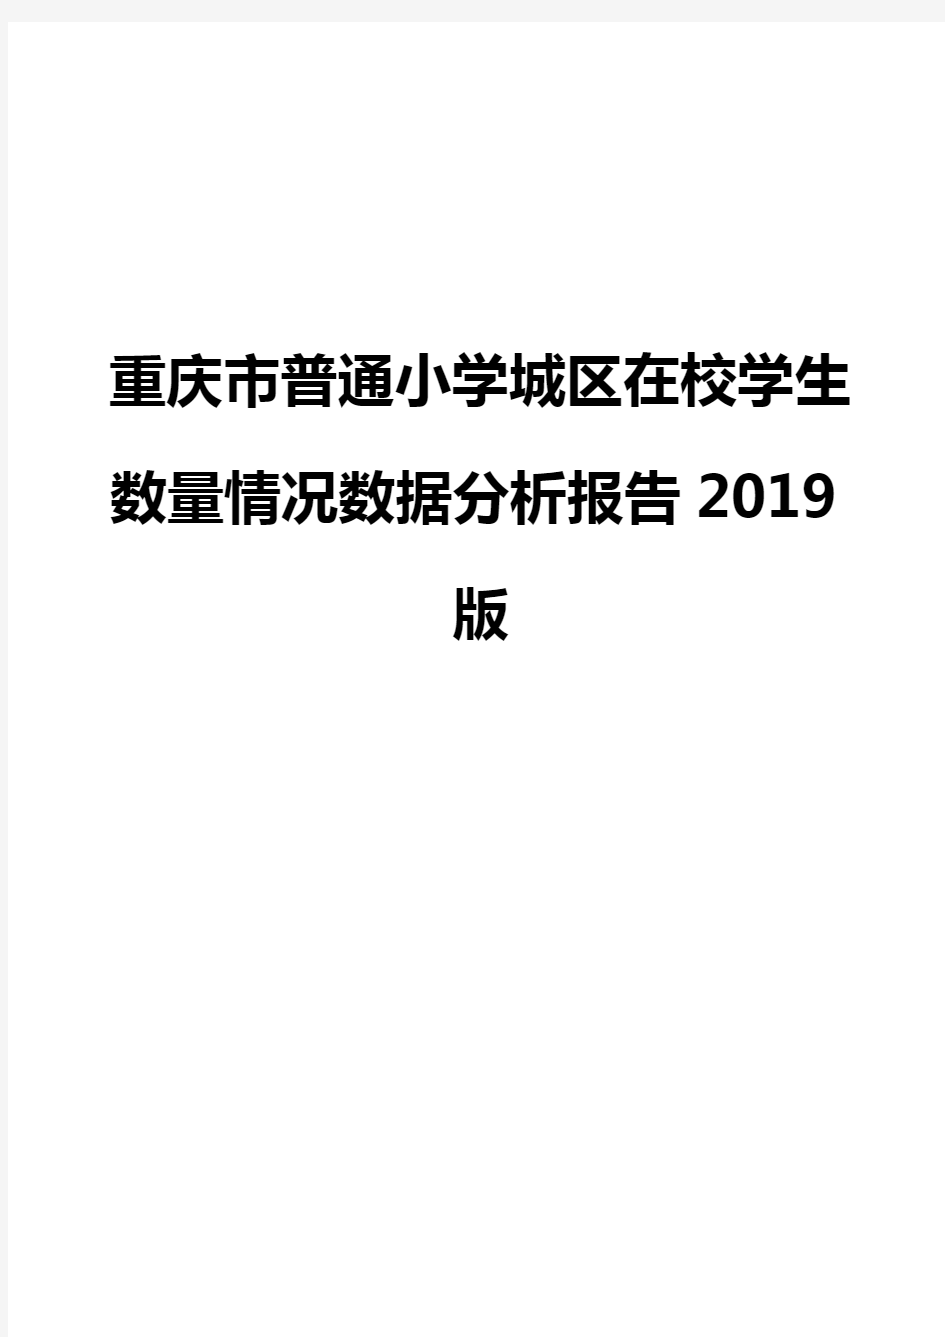 重庆市普通小学城区在校学生数量情况数据分析报告2019版